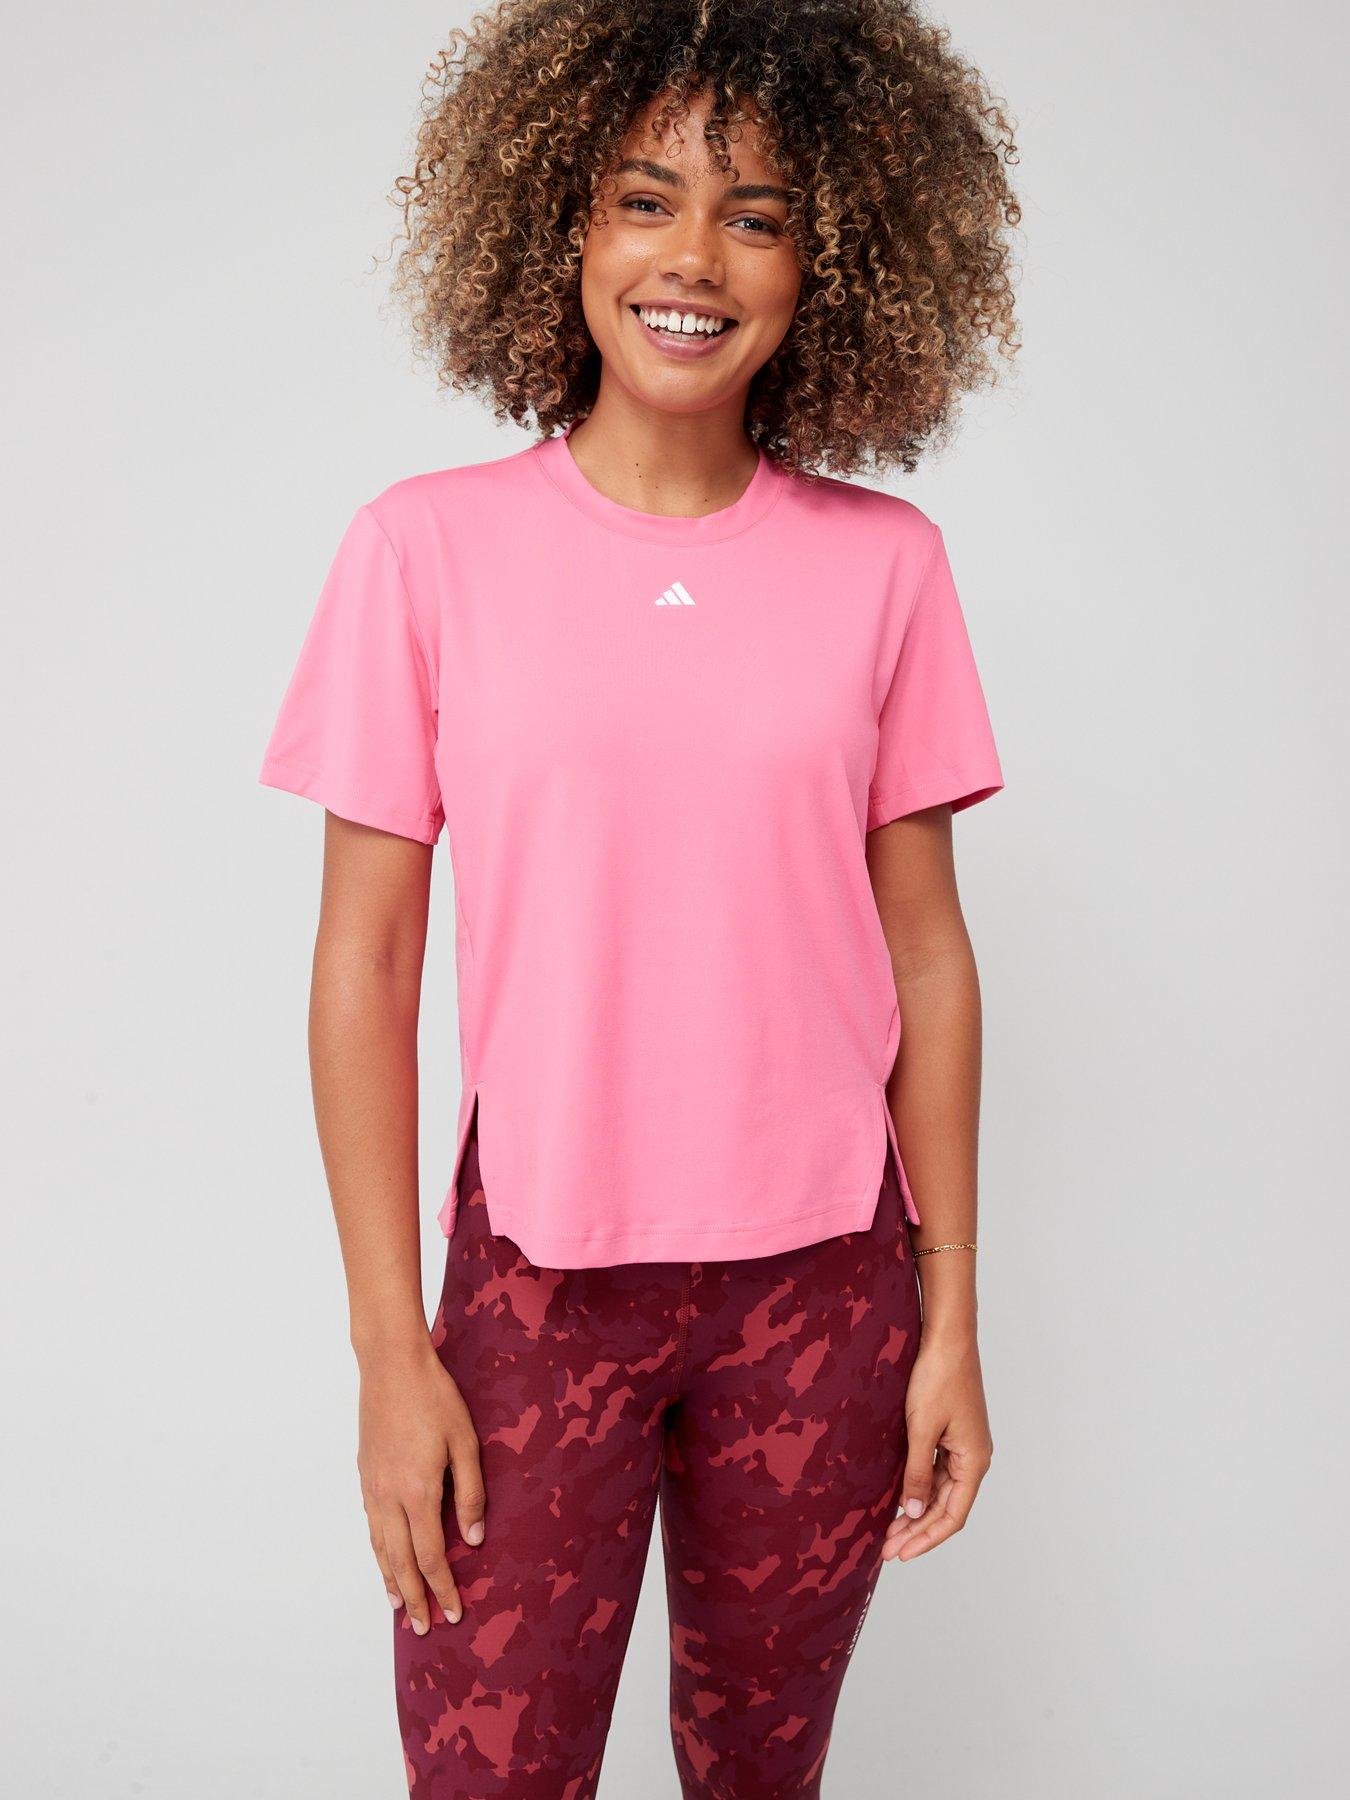 Urter Hverdage Bungalow Pink | Adidas | T-shirts | Womens sports clothing | Sports & leisure |  www.very.co.uk